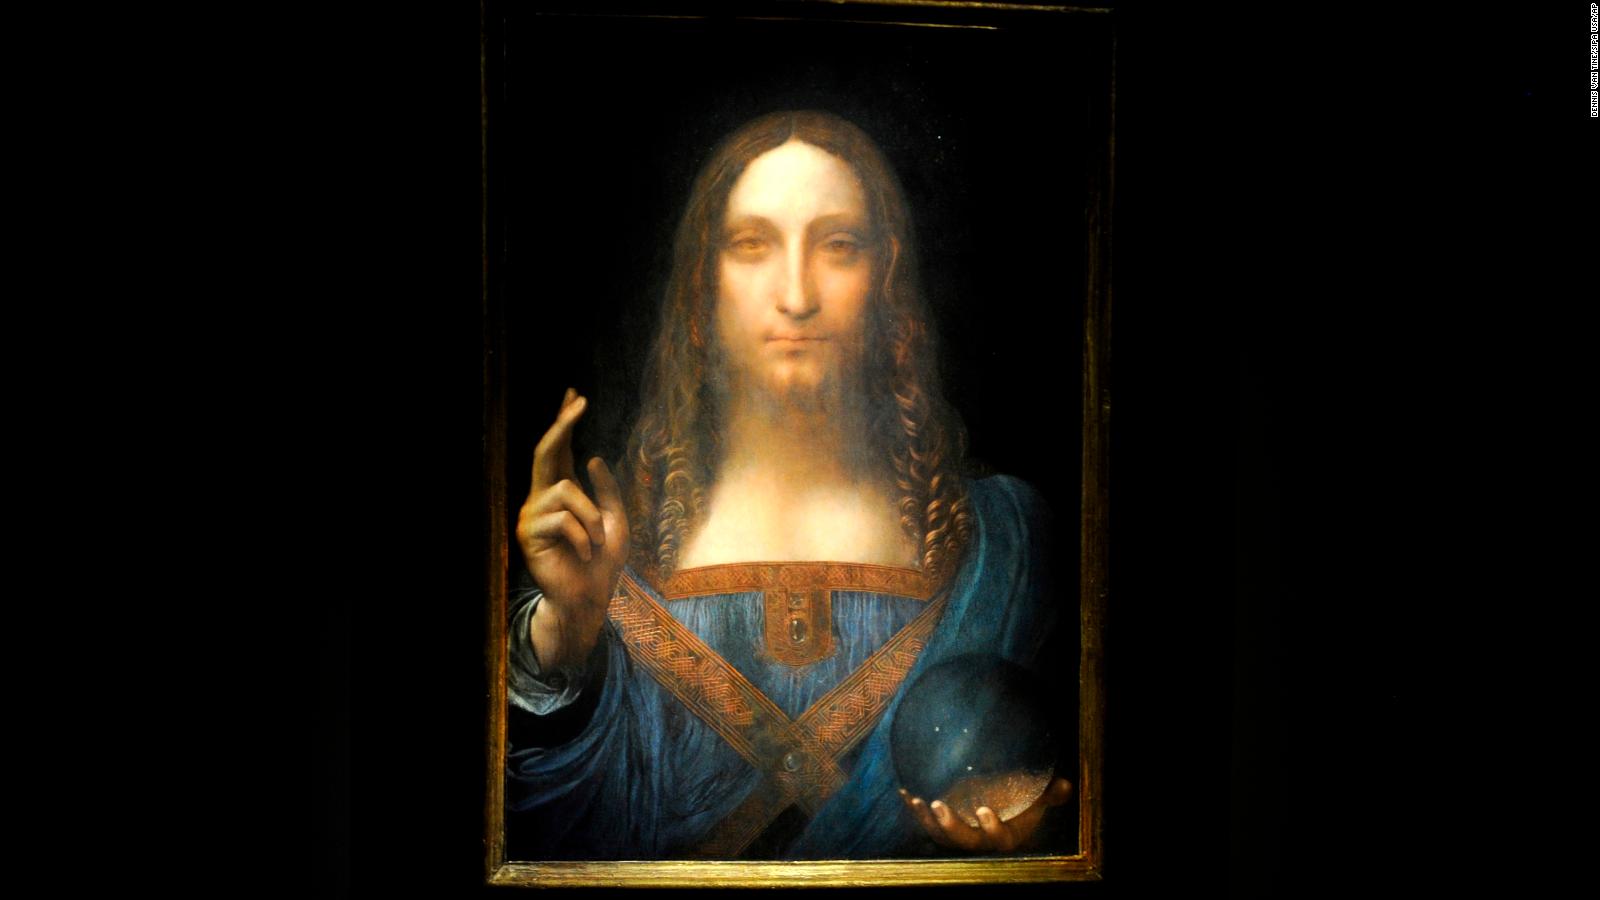 Salvator Mundi: $10B feud involving Leonardo Da Vinci